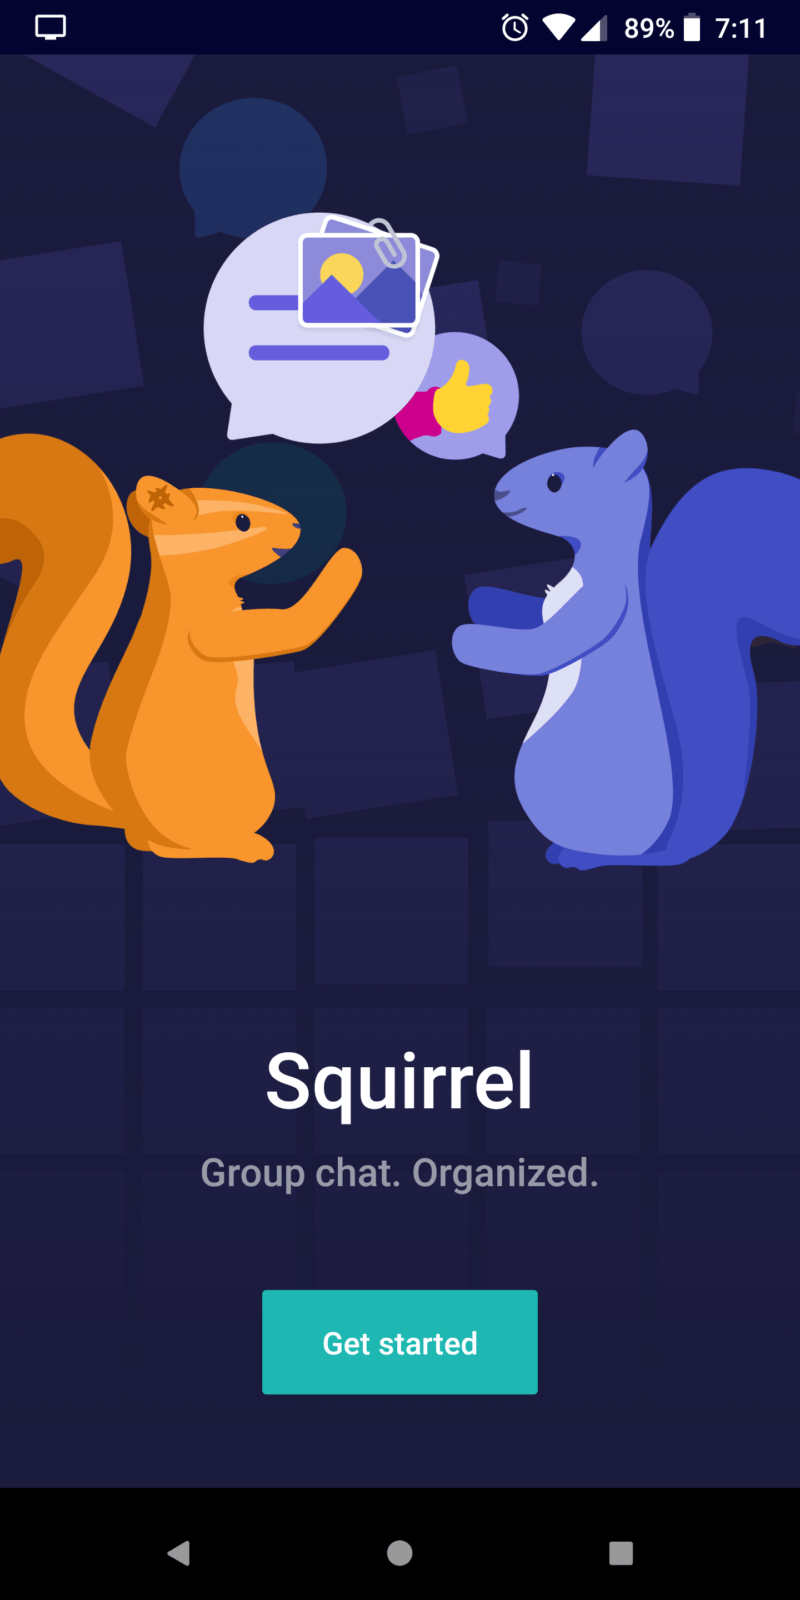 Yahoo presenta una nuova app per le chat di gruppo: "Squirrel" | Evosmart.it